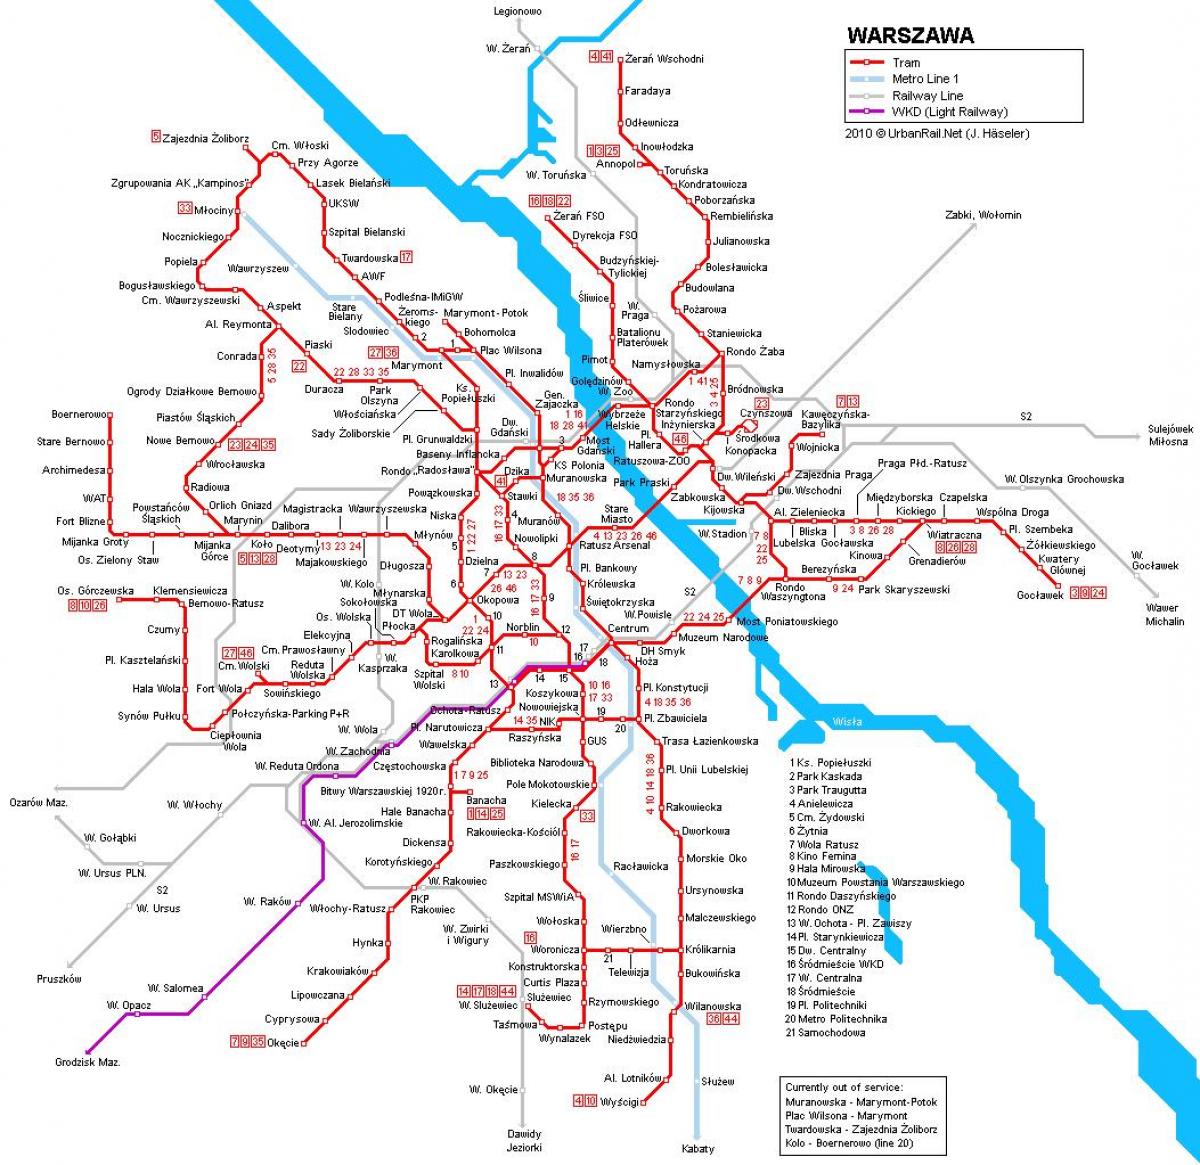 Mapa de trenes de varsovia